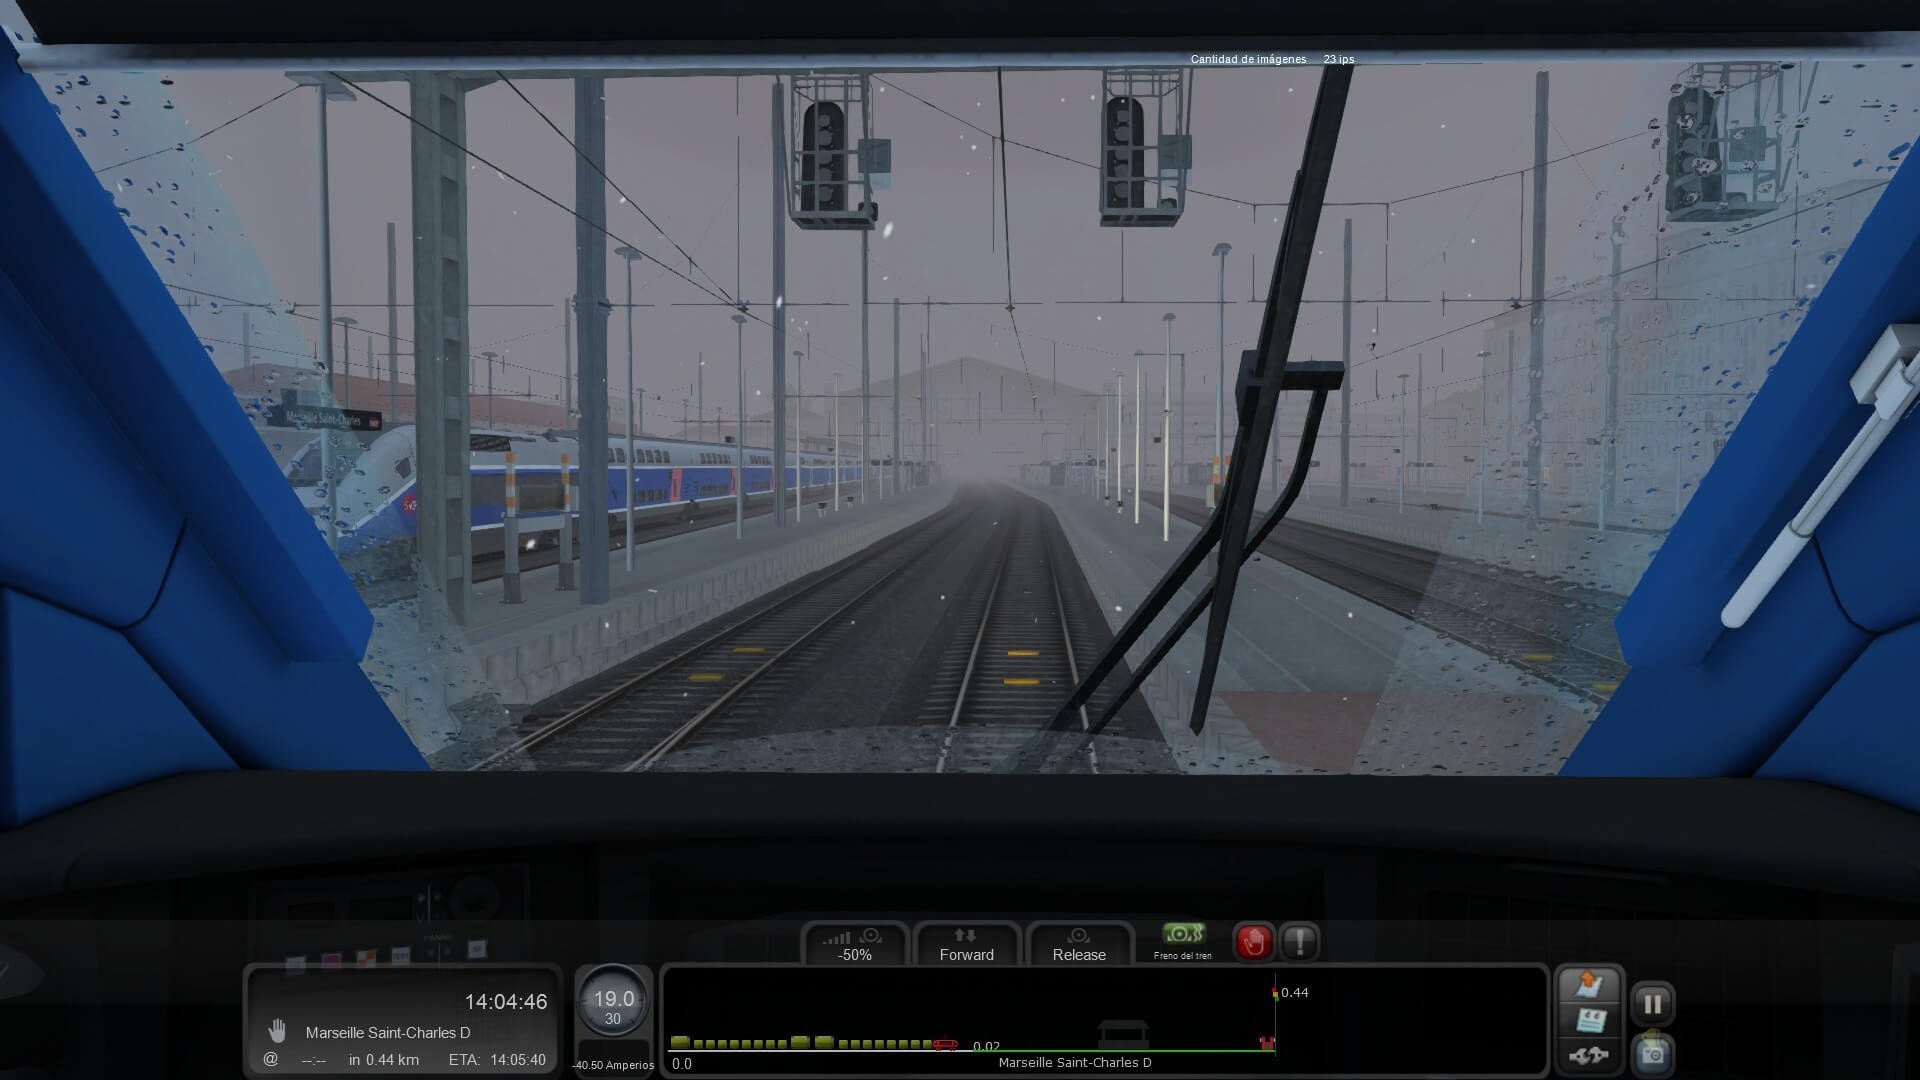 Jogo Simulador de trem online. Jogar gratis